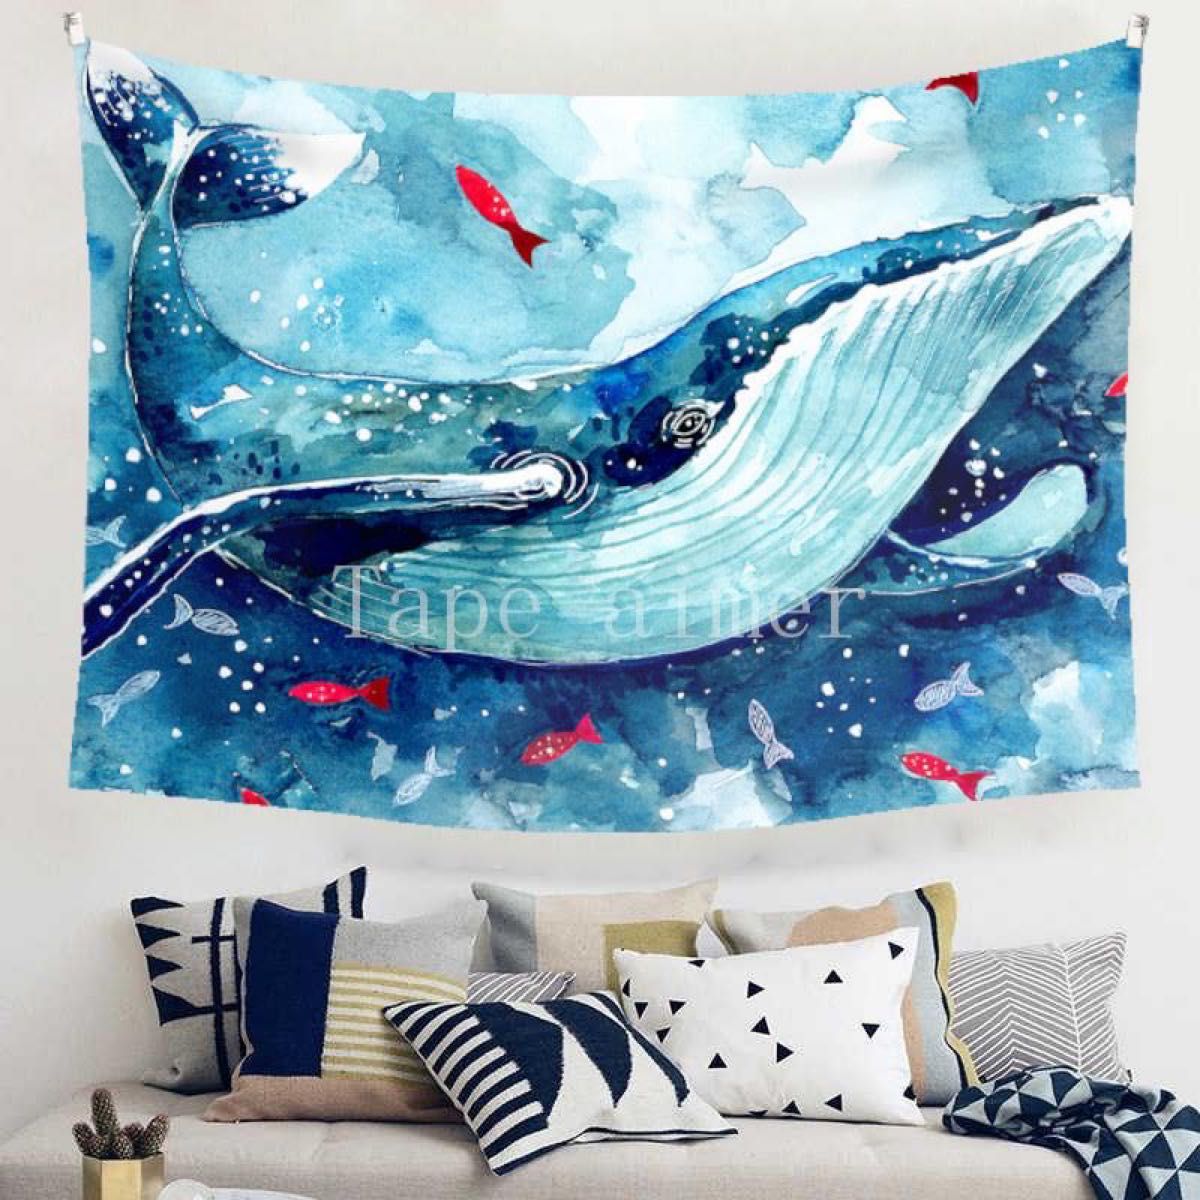 タペストリー クジラ 金具付 イラスト 魚 水彩画 水 模様替 壁掛け F58